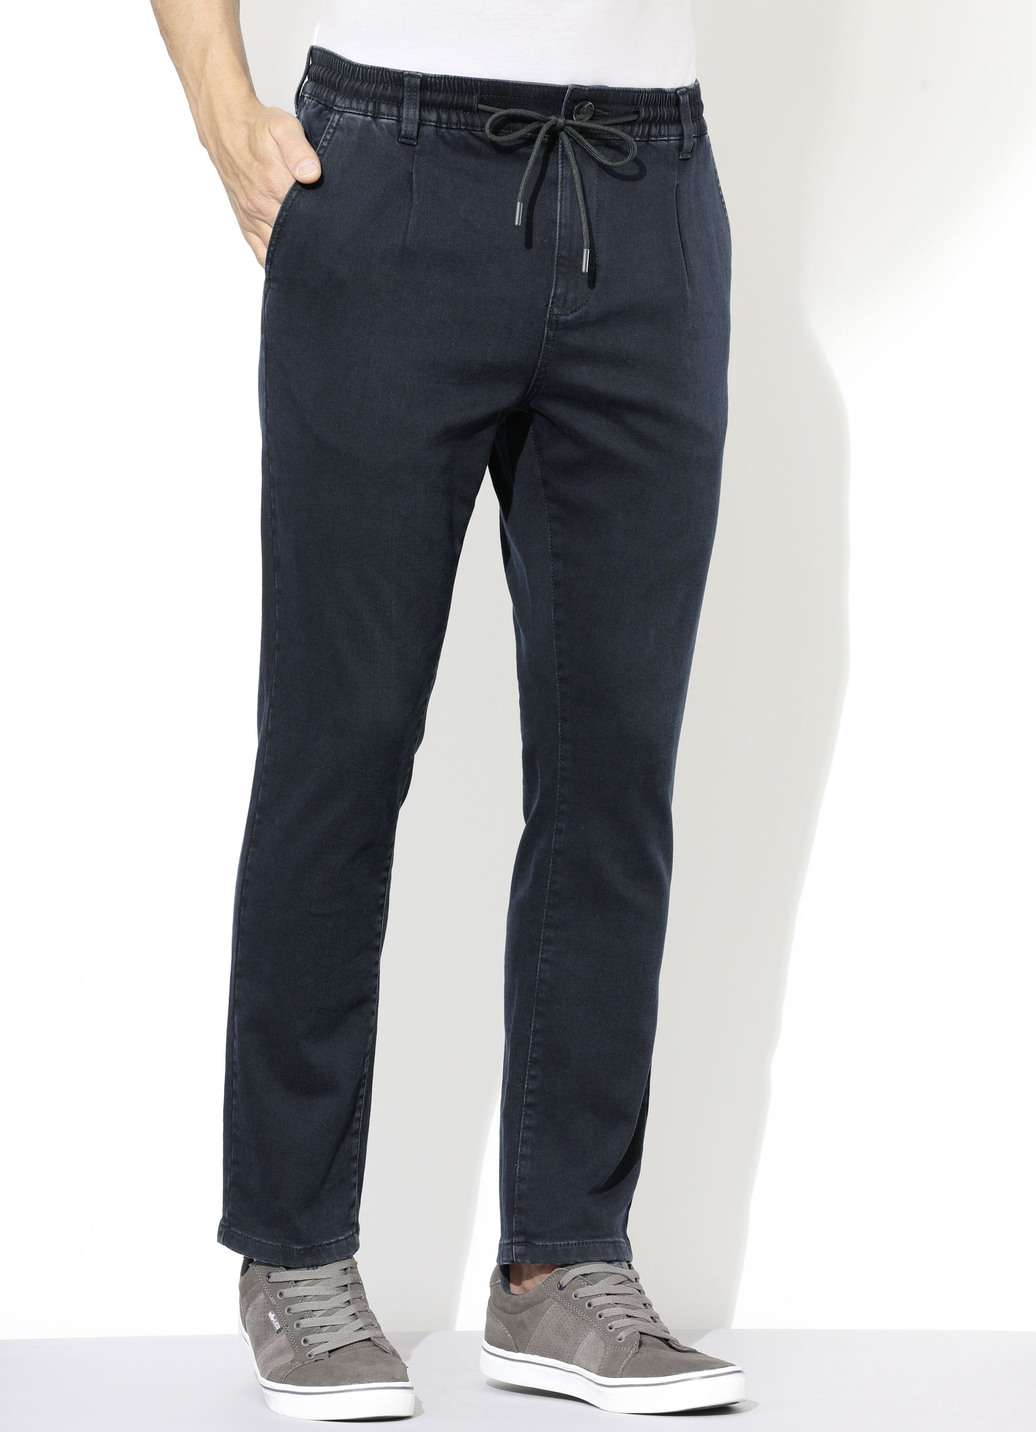 Superstretch-Jeans in 3 Farben, Dunkelblau, Größe 58 von DANNECKER